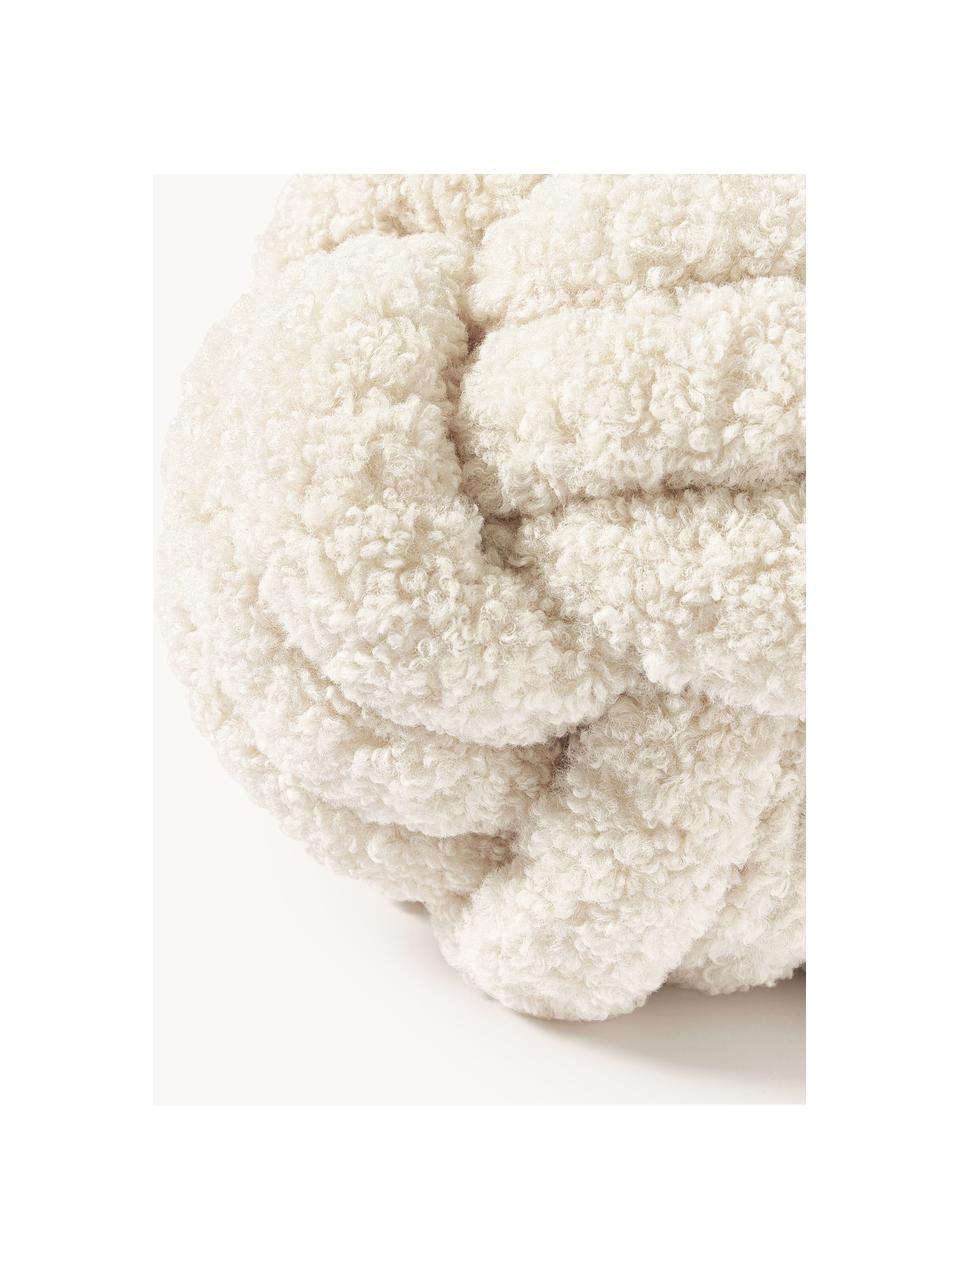 Cuscino annodato in tessuto teddy Twist, Rivestimento: 100% poliestere (teddy), Bianco crema, Ø 30 cm